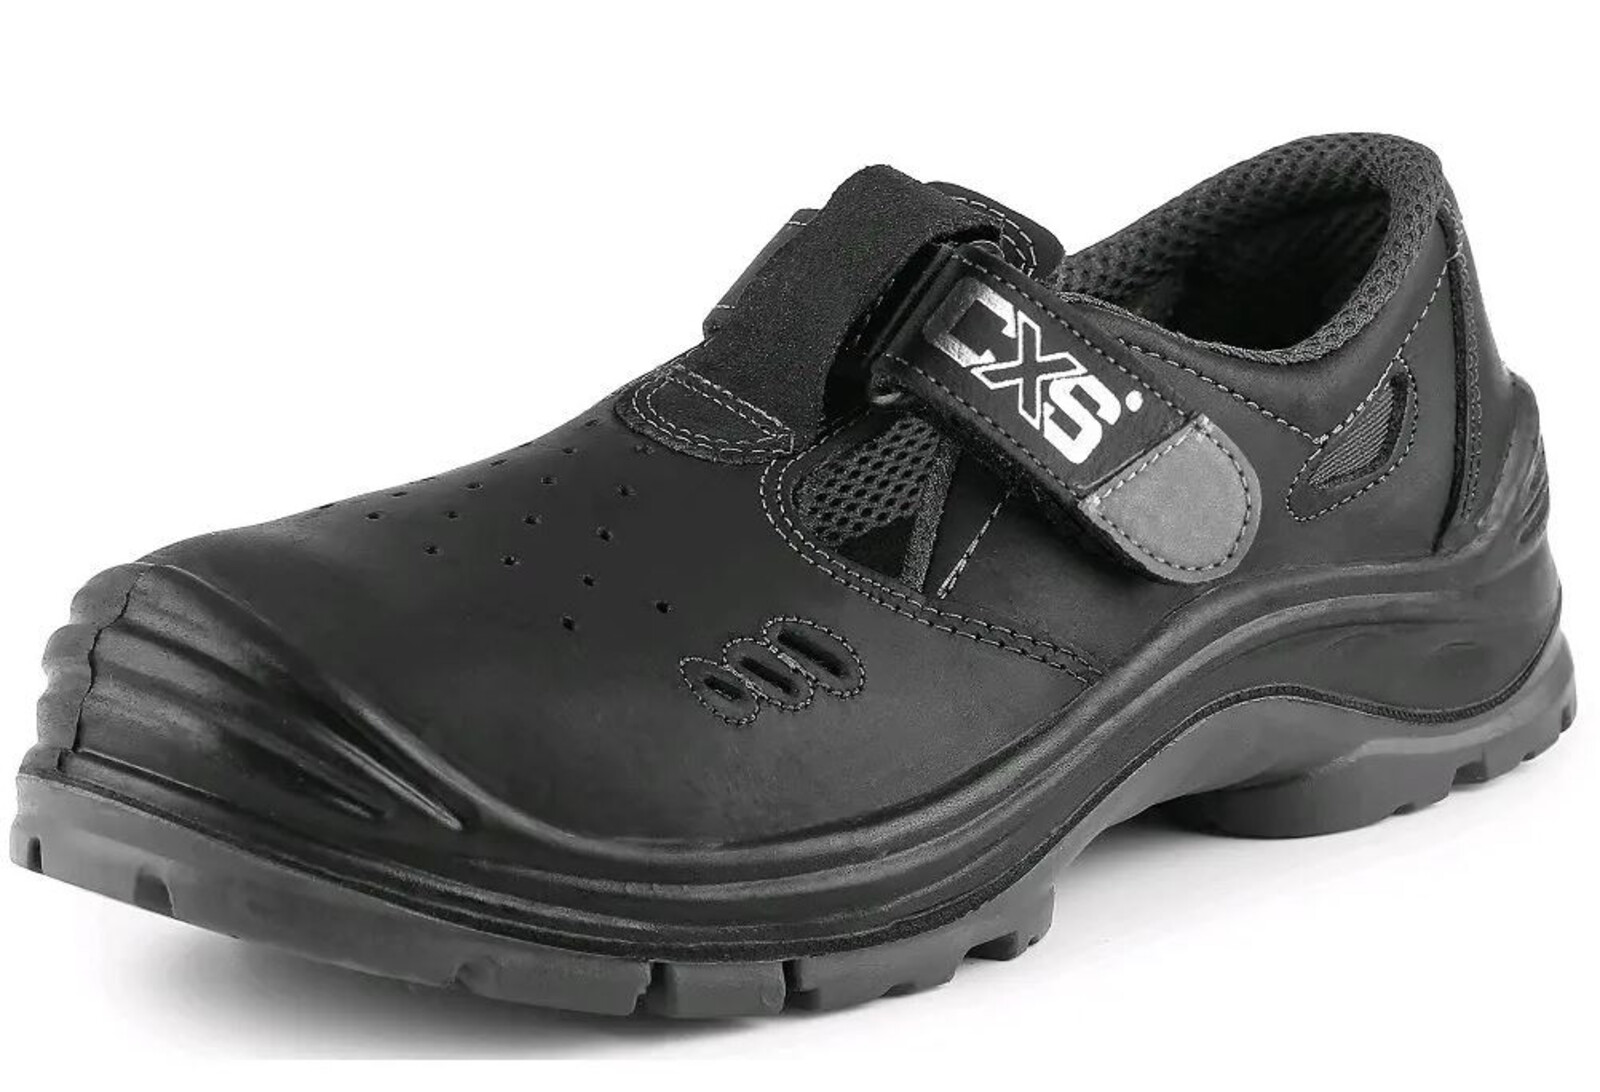 Bezpečnostné sandále CXS Safety Steel Iron S1 - veľkosť: 46, farba: čierna